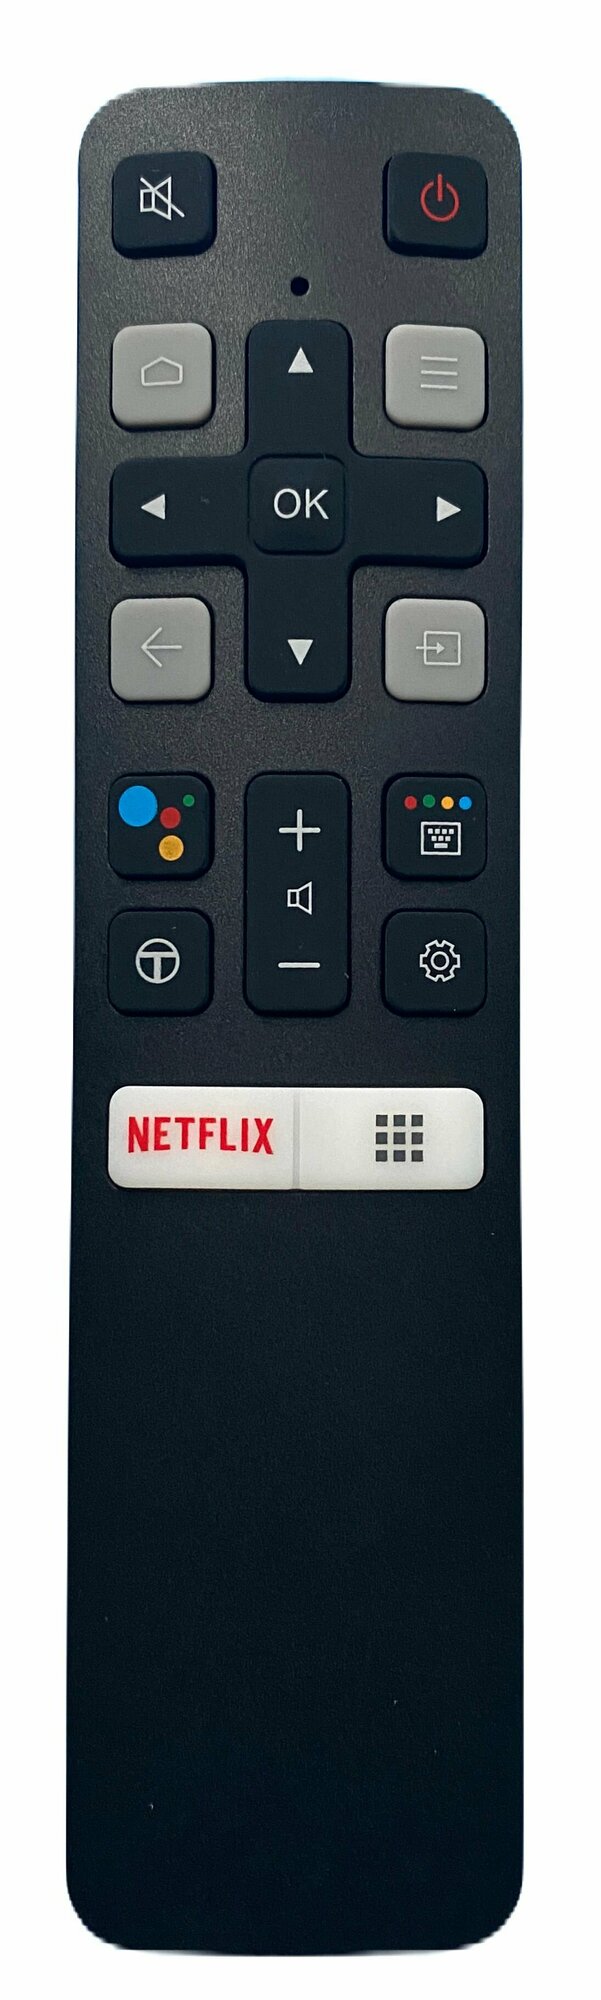 Пульт RC802V FMR1 Netflix с голосовым управлением для TCL